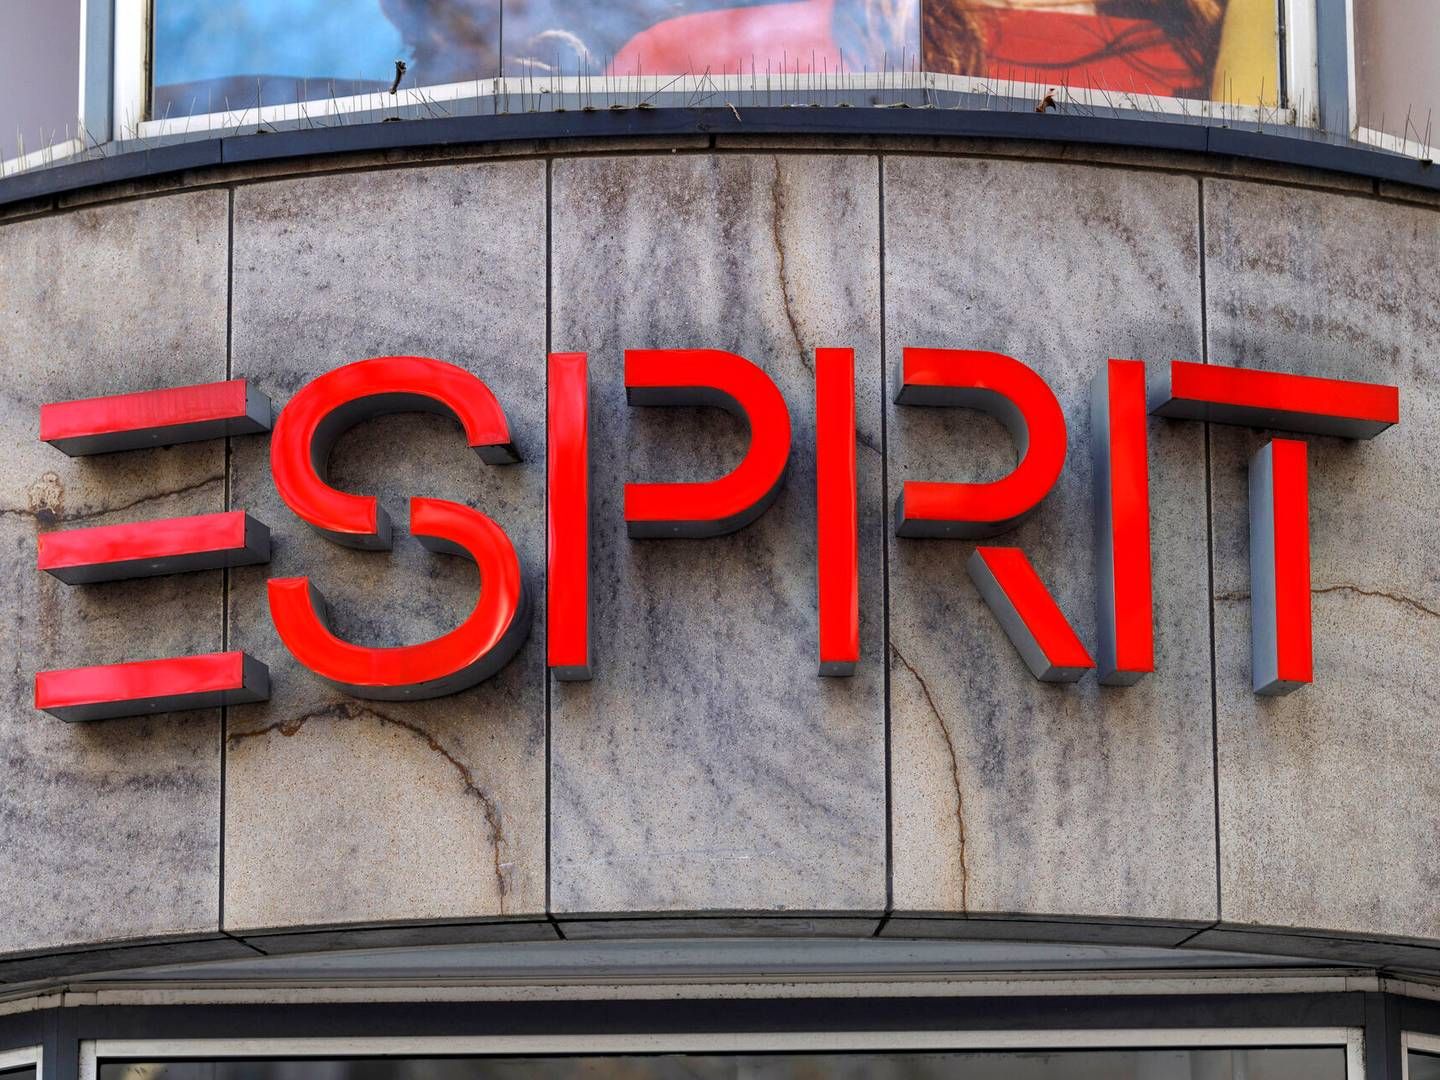 Esprit er i Danmark til stede med en webshop og en butik i stormagasinet Illum. | Foto: Christoph Hardt/AP/Ritzau Scanpix